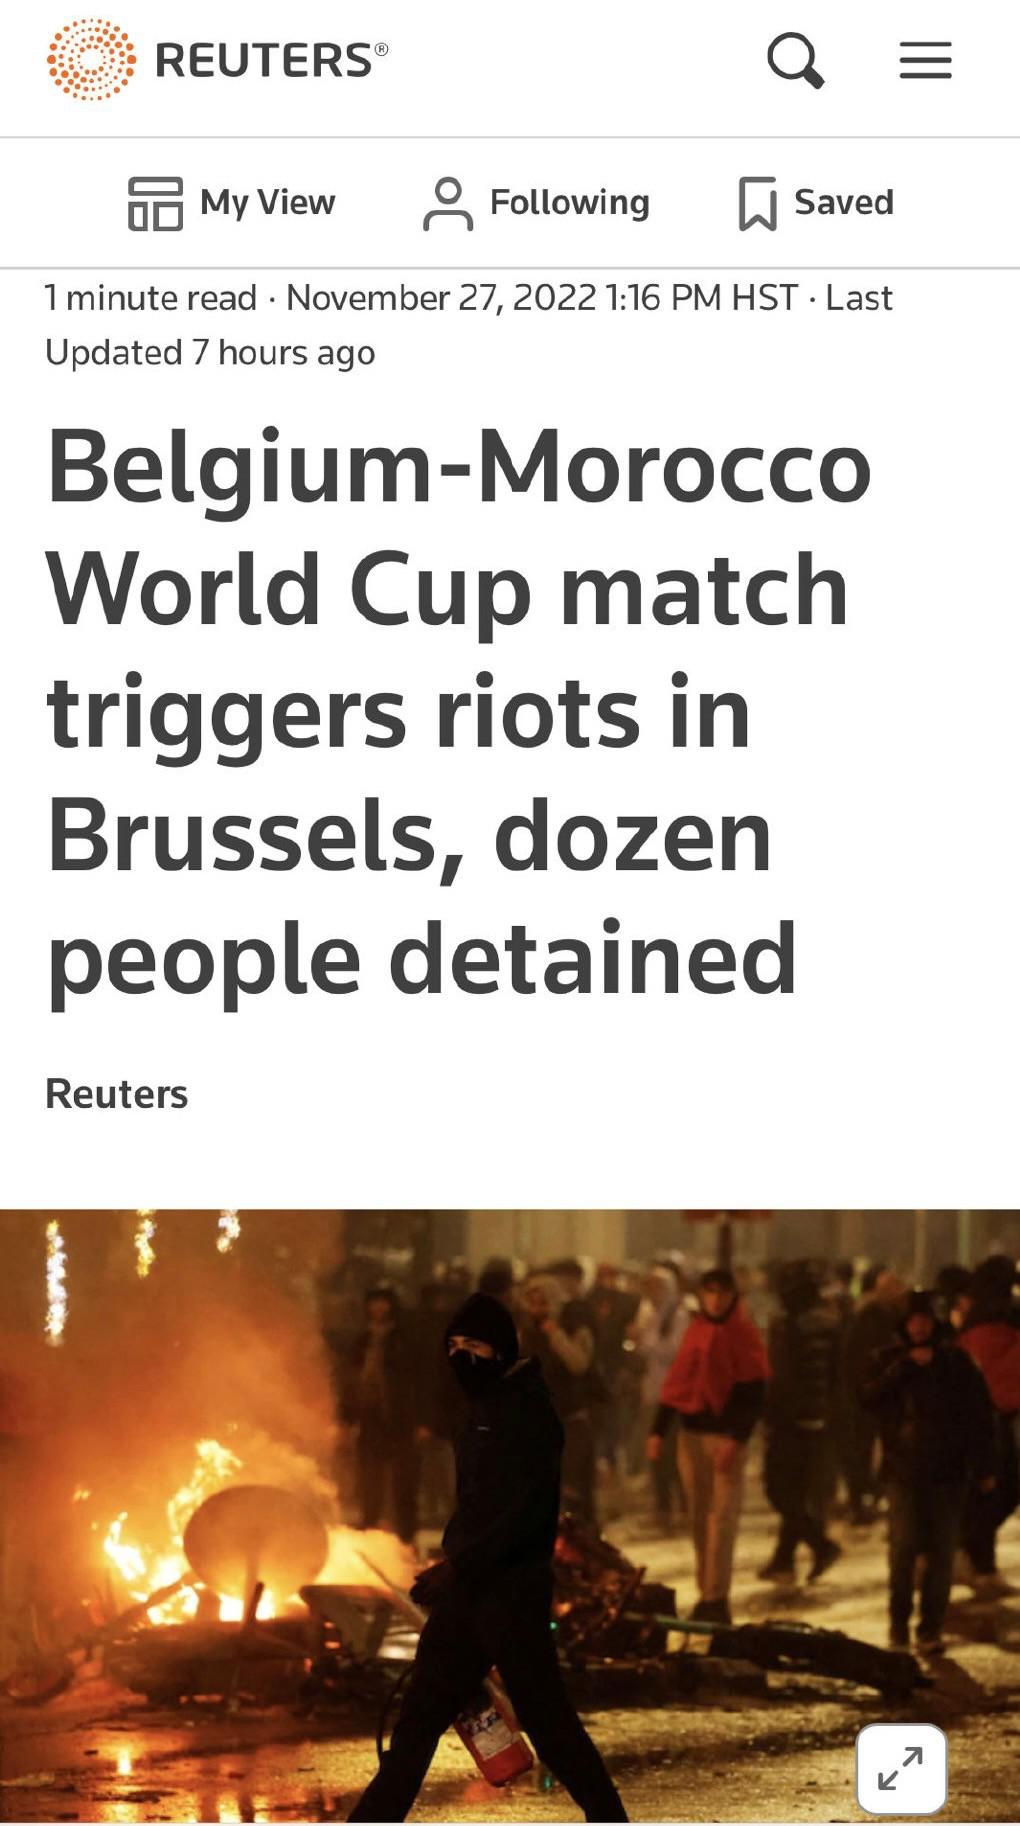 混乱！摩洛哥击败比利时，双方球迷大打出手，打砸商店烧汽车暴动